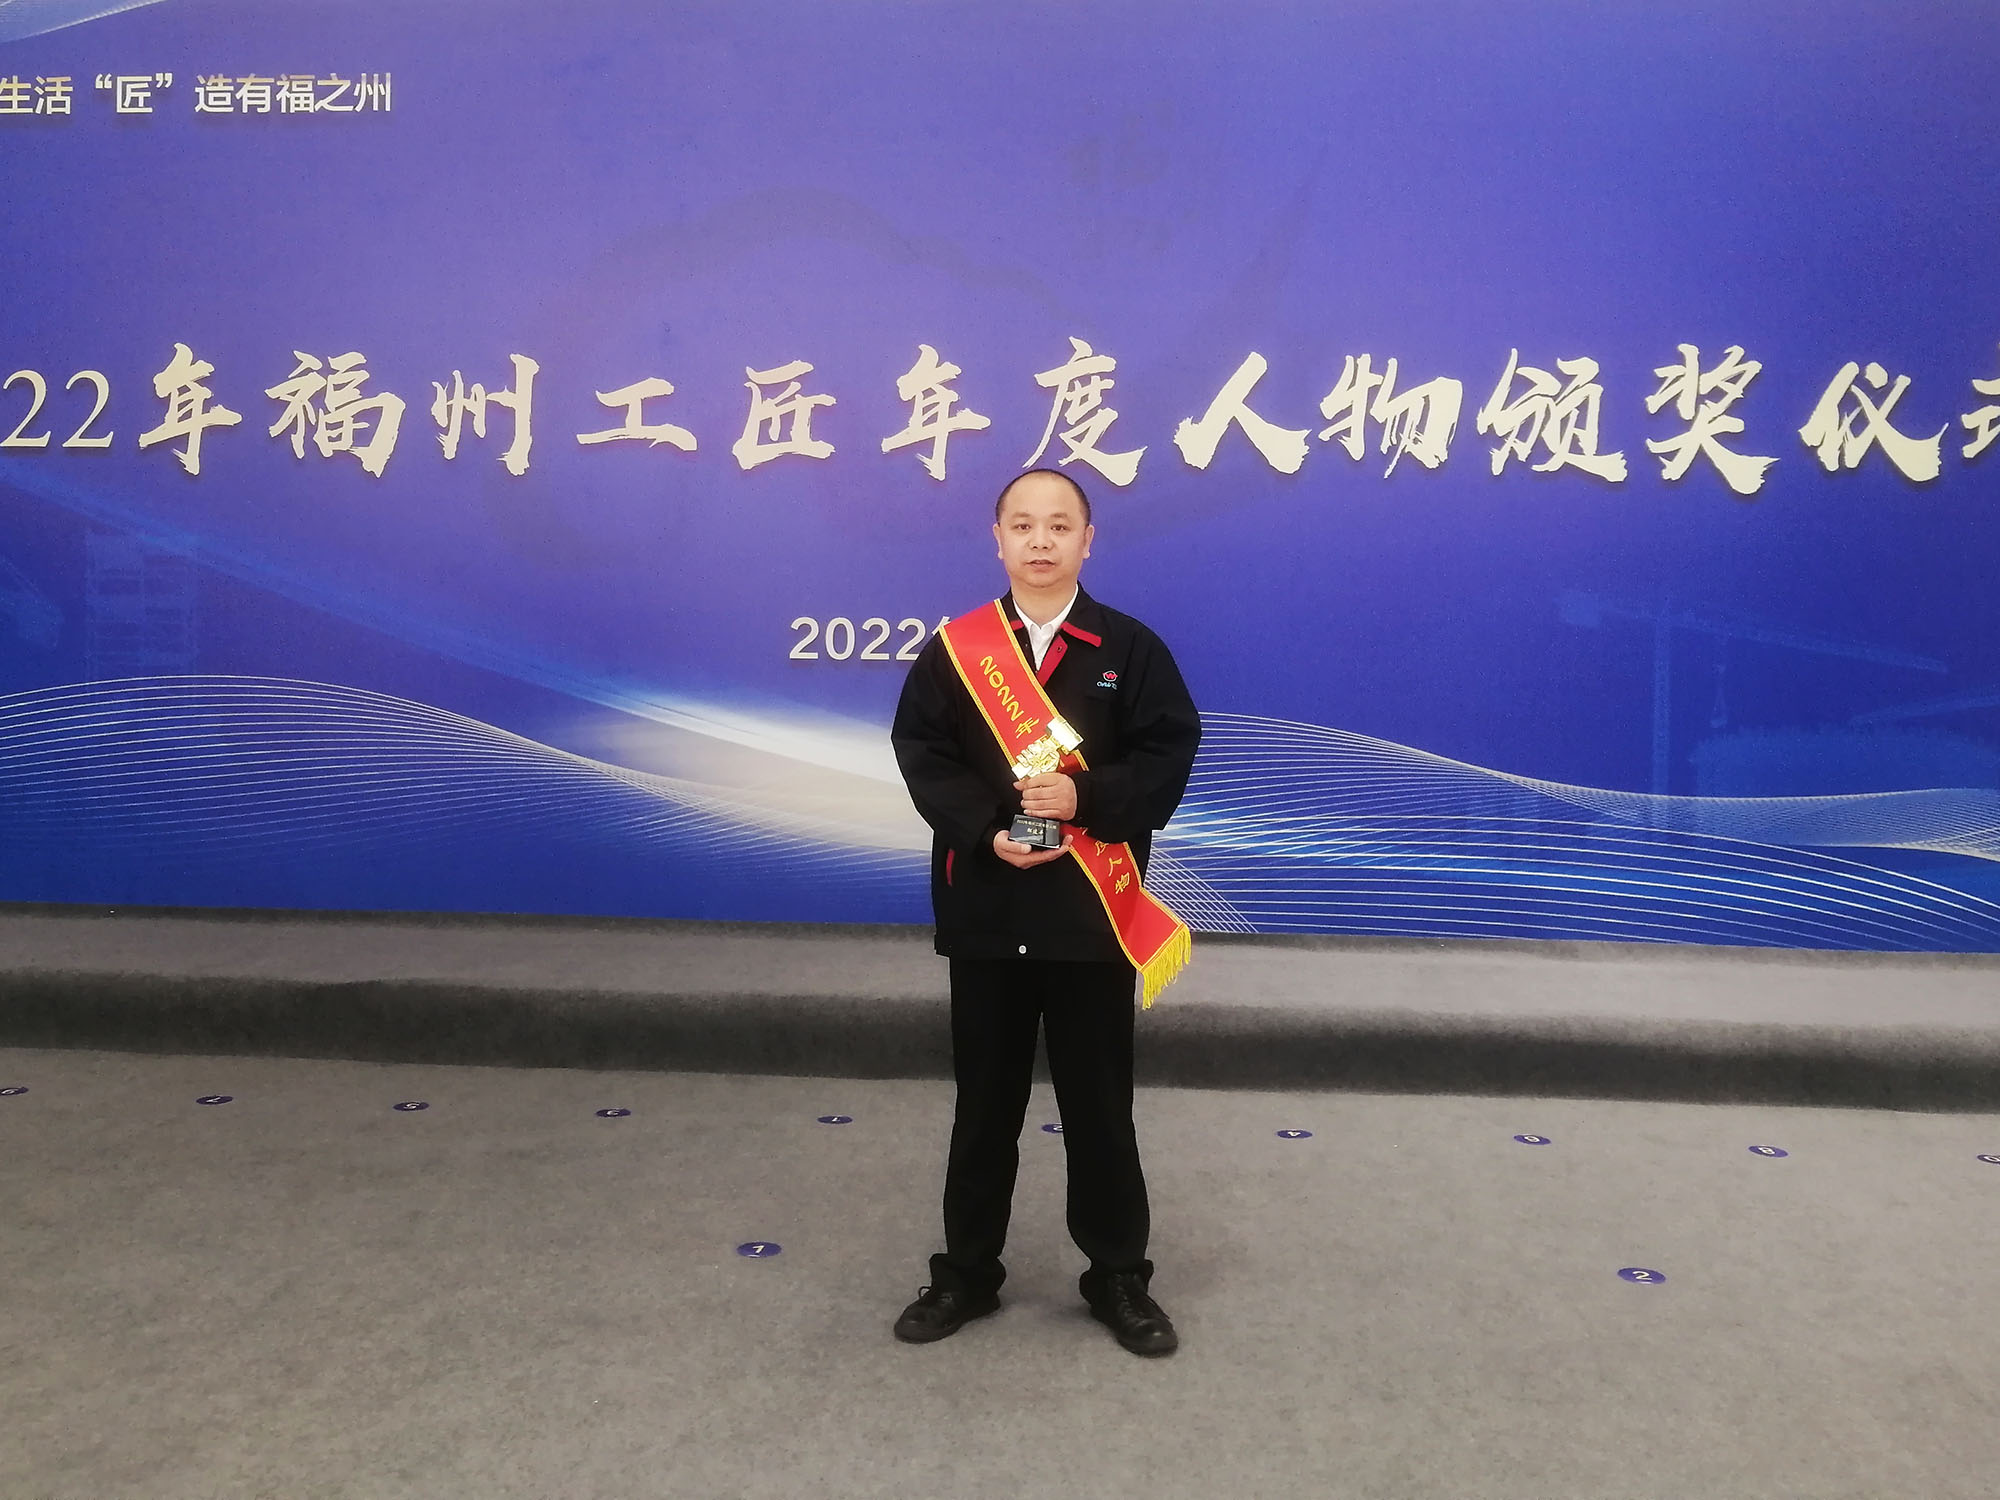 福建上润磨工组组长邹建平获评 “2022年福州工匠年度人物” 称号